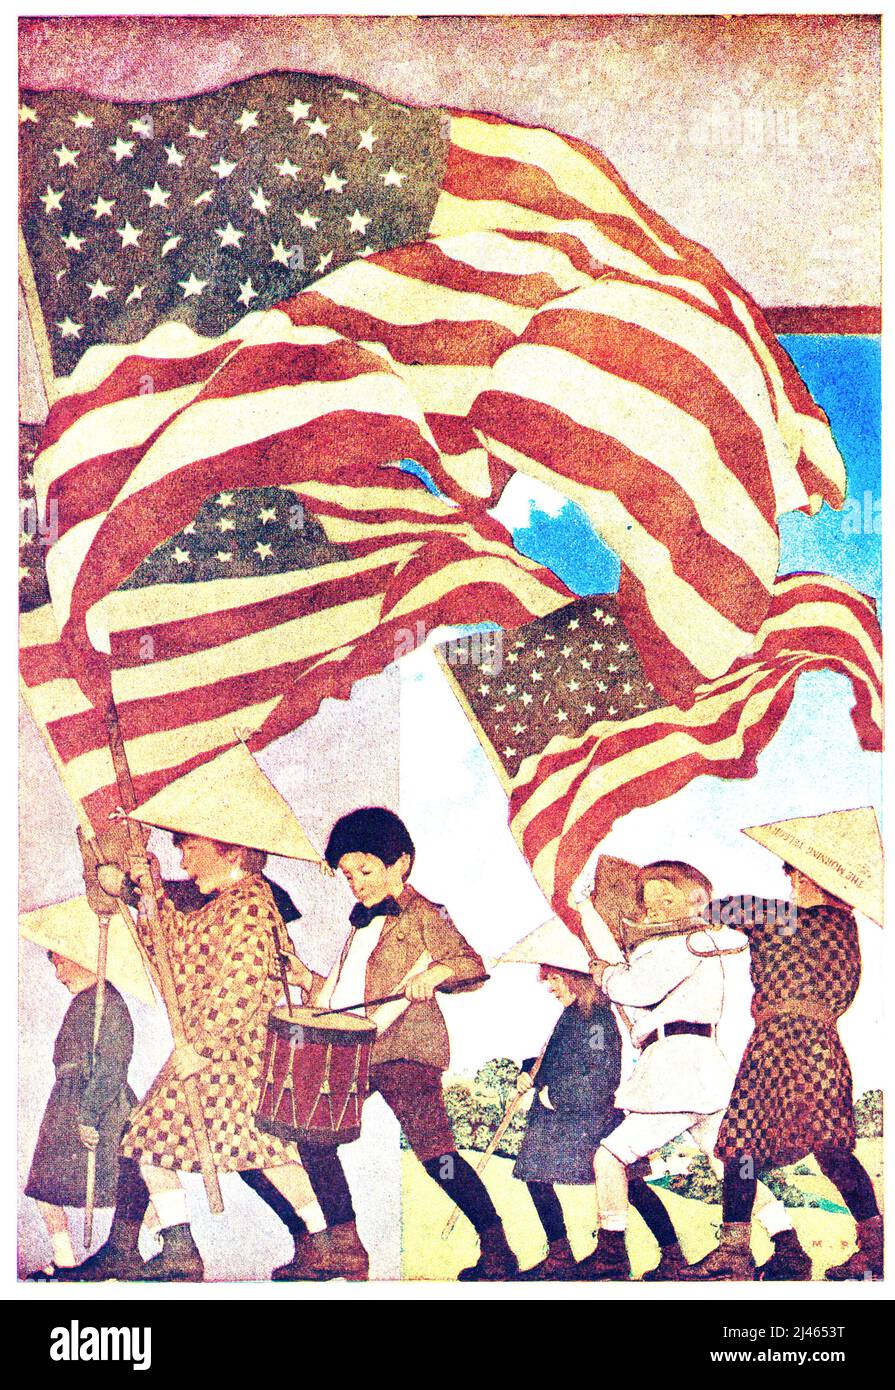 Maxfield Parrish - avec trompette et tambour - drapeau orne les enfants américains avec tambour et trompette - 1904 Banque D'Images